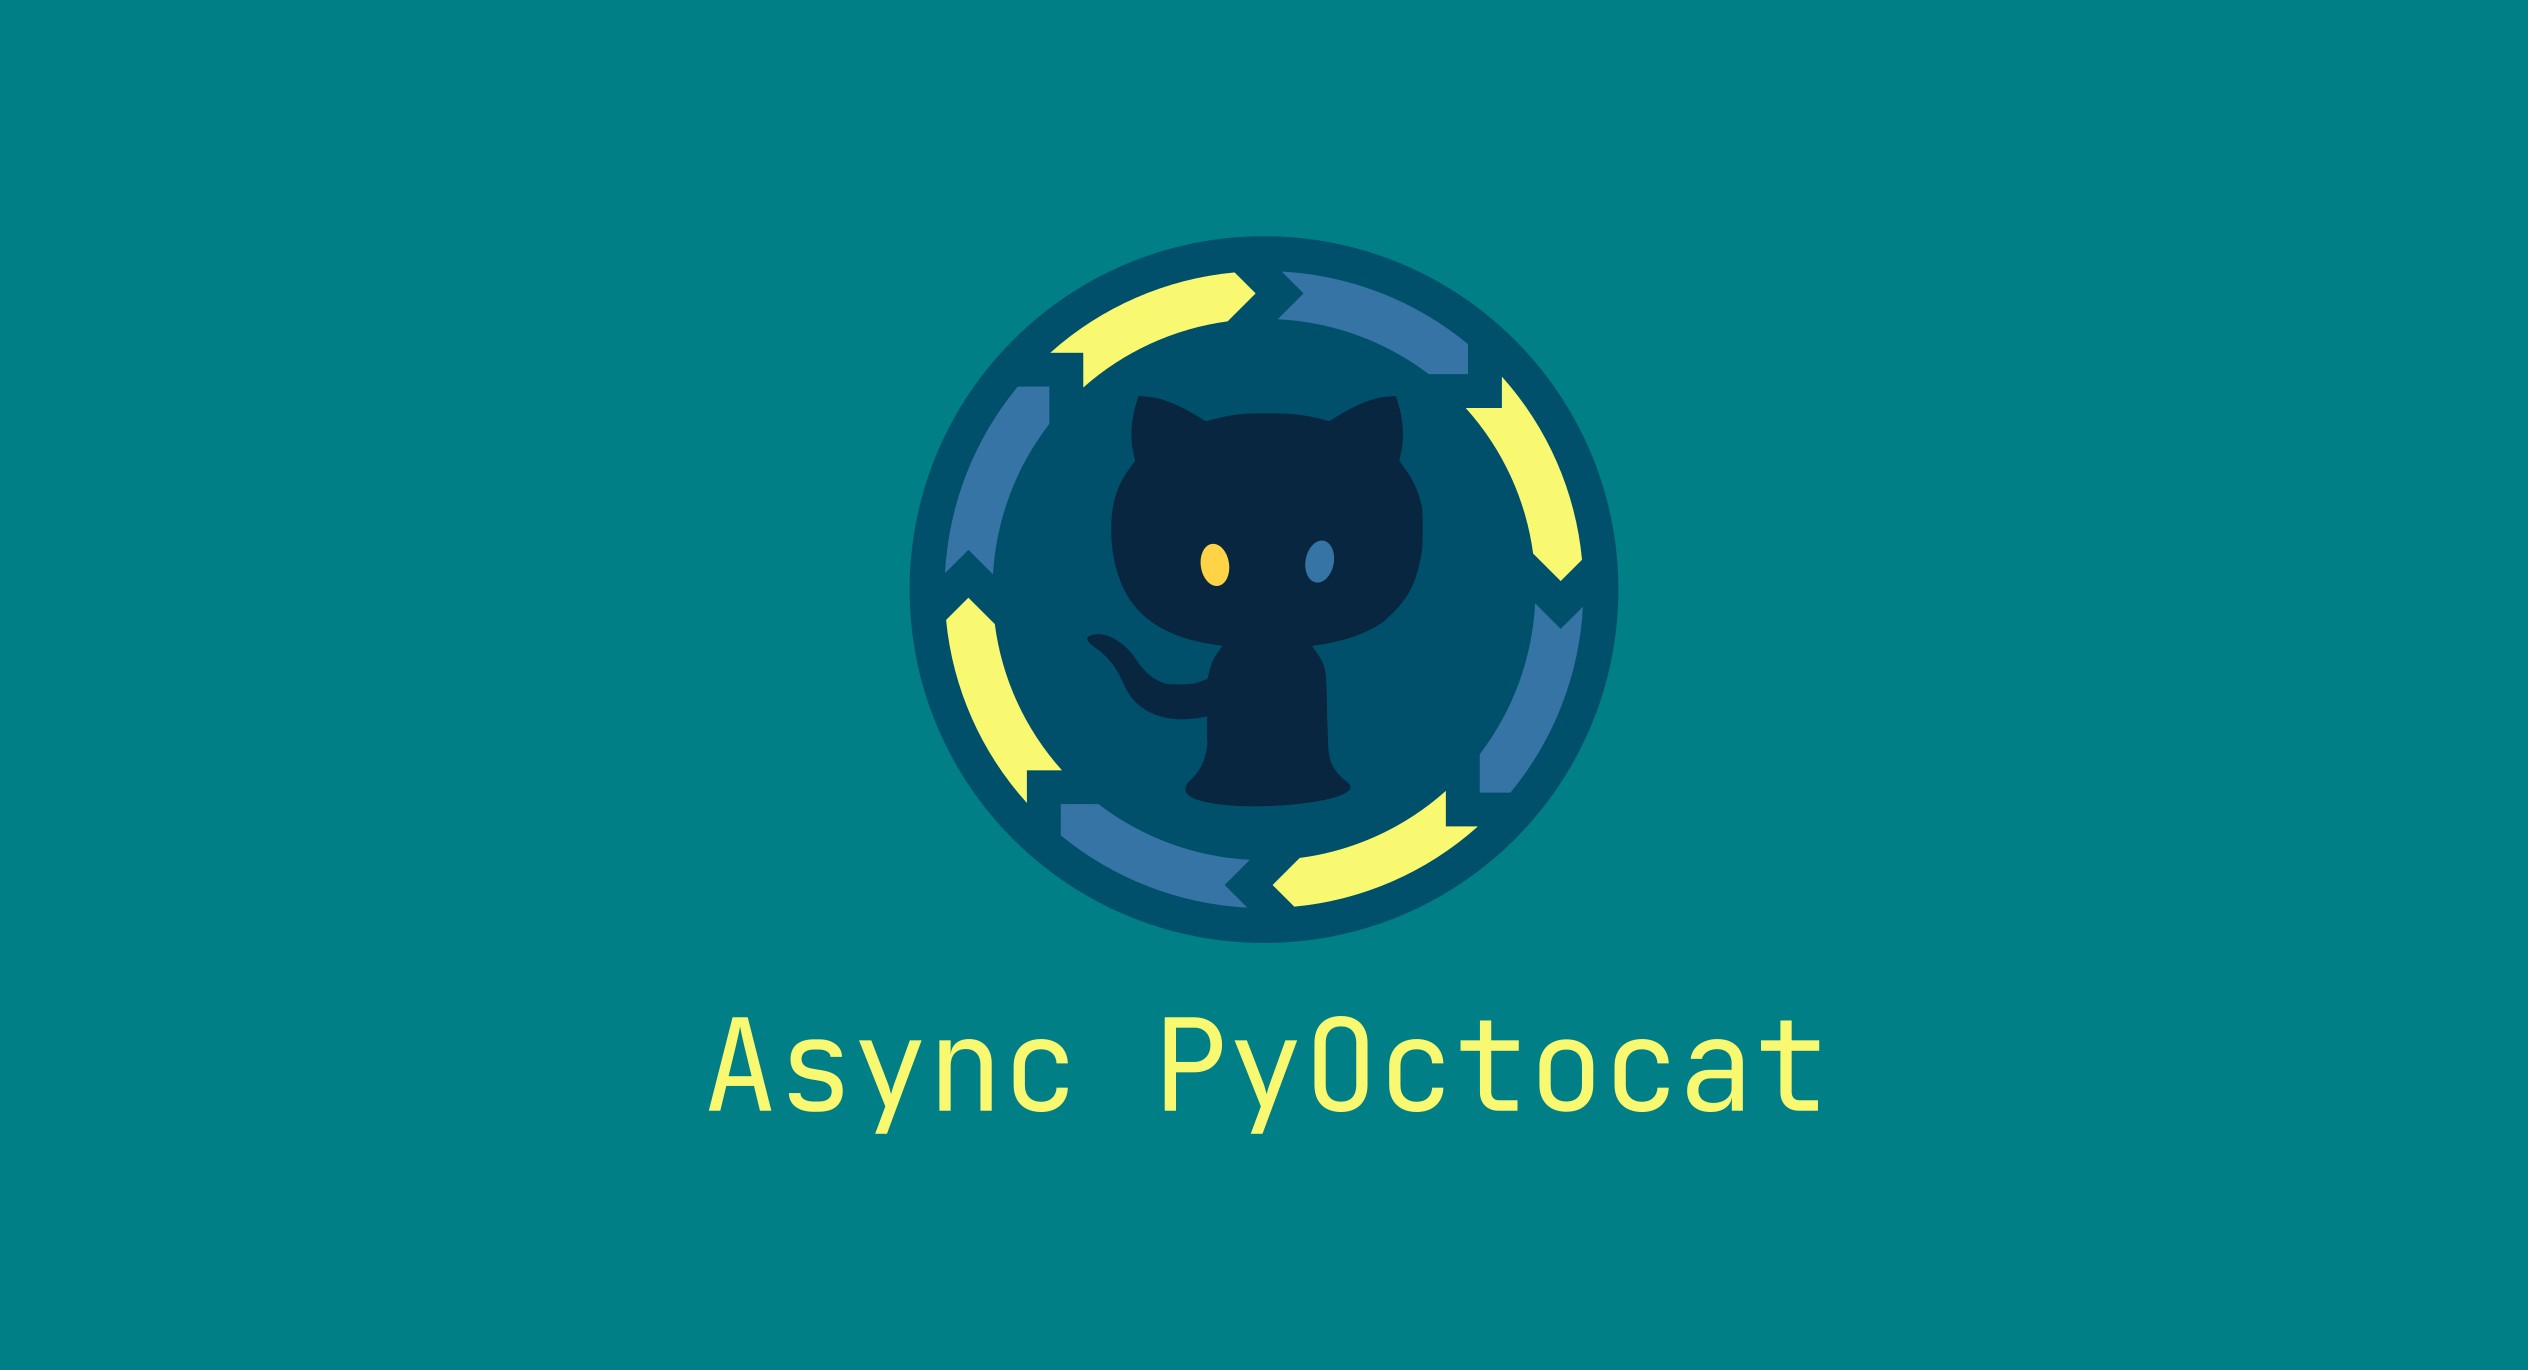 Async PyOctocat